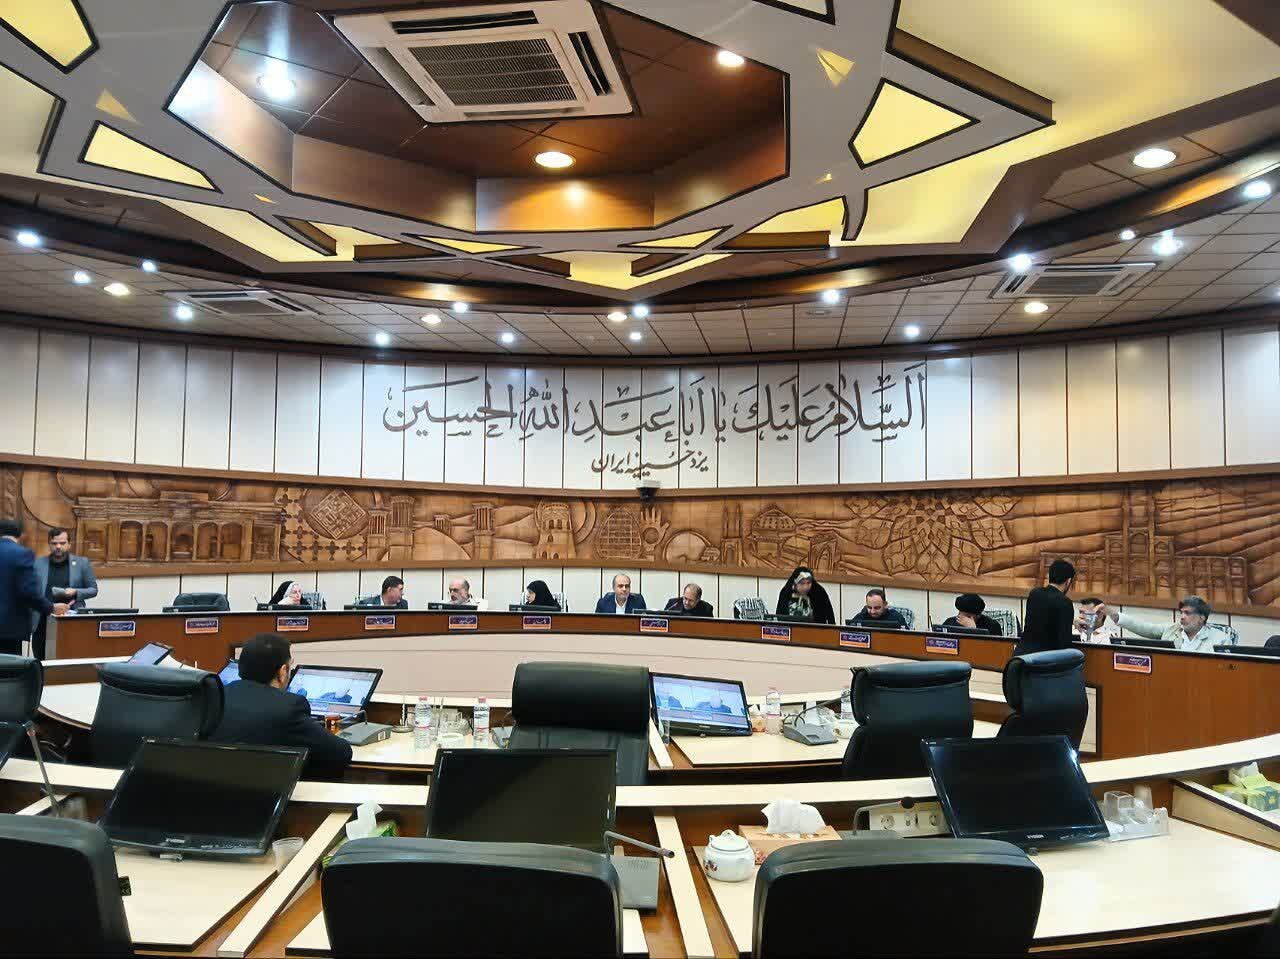 اعضای هیئت رییسه چهارمین سال شورای اسلامی شهر یزد انتخاب شدند